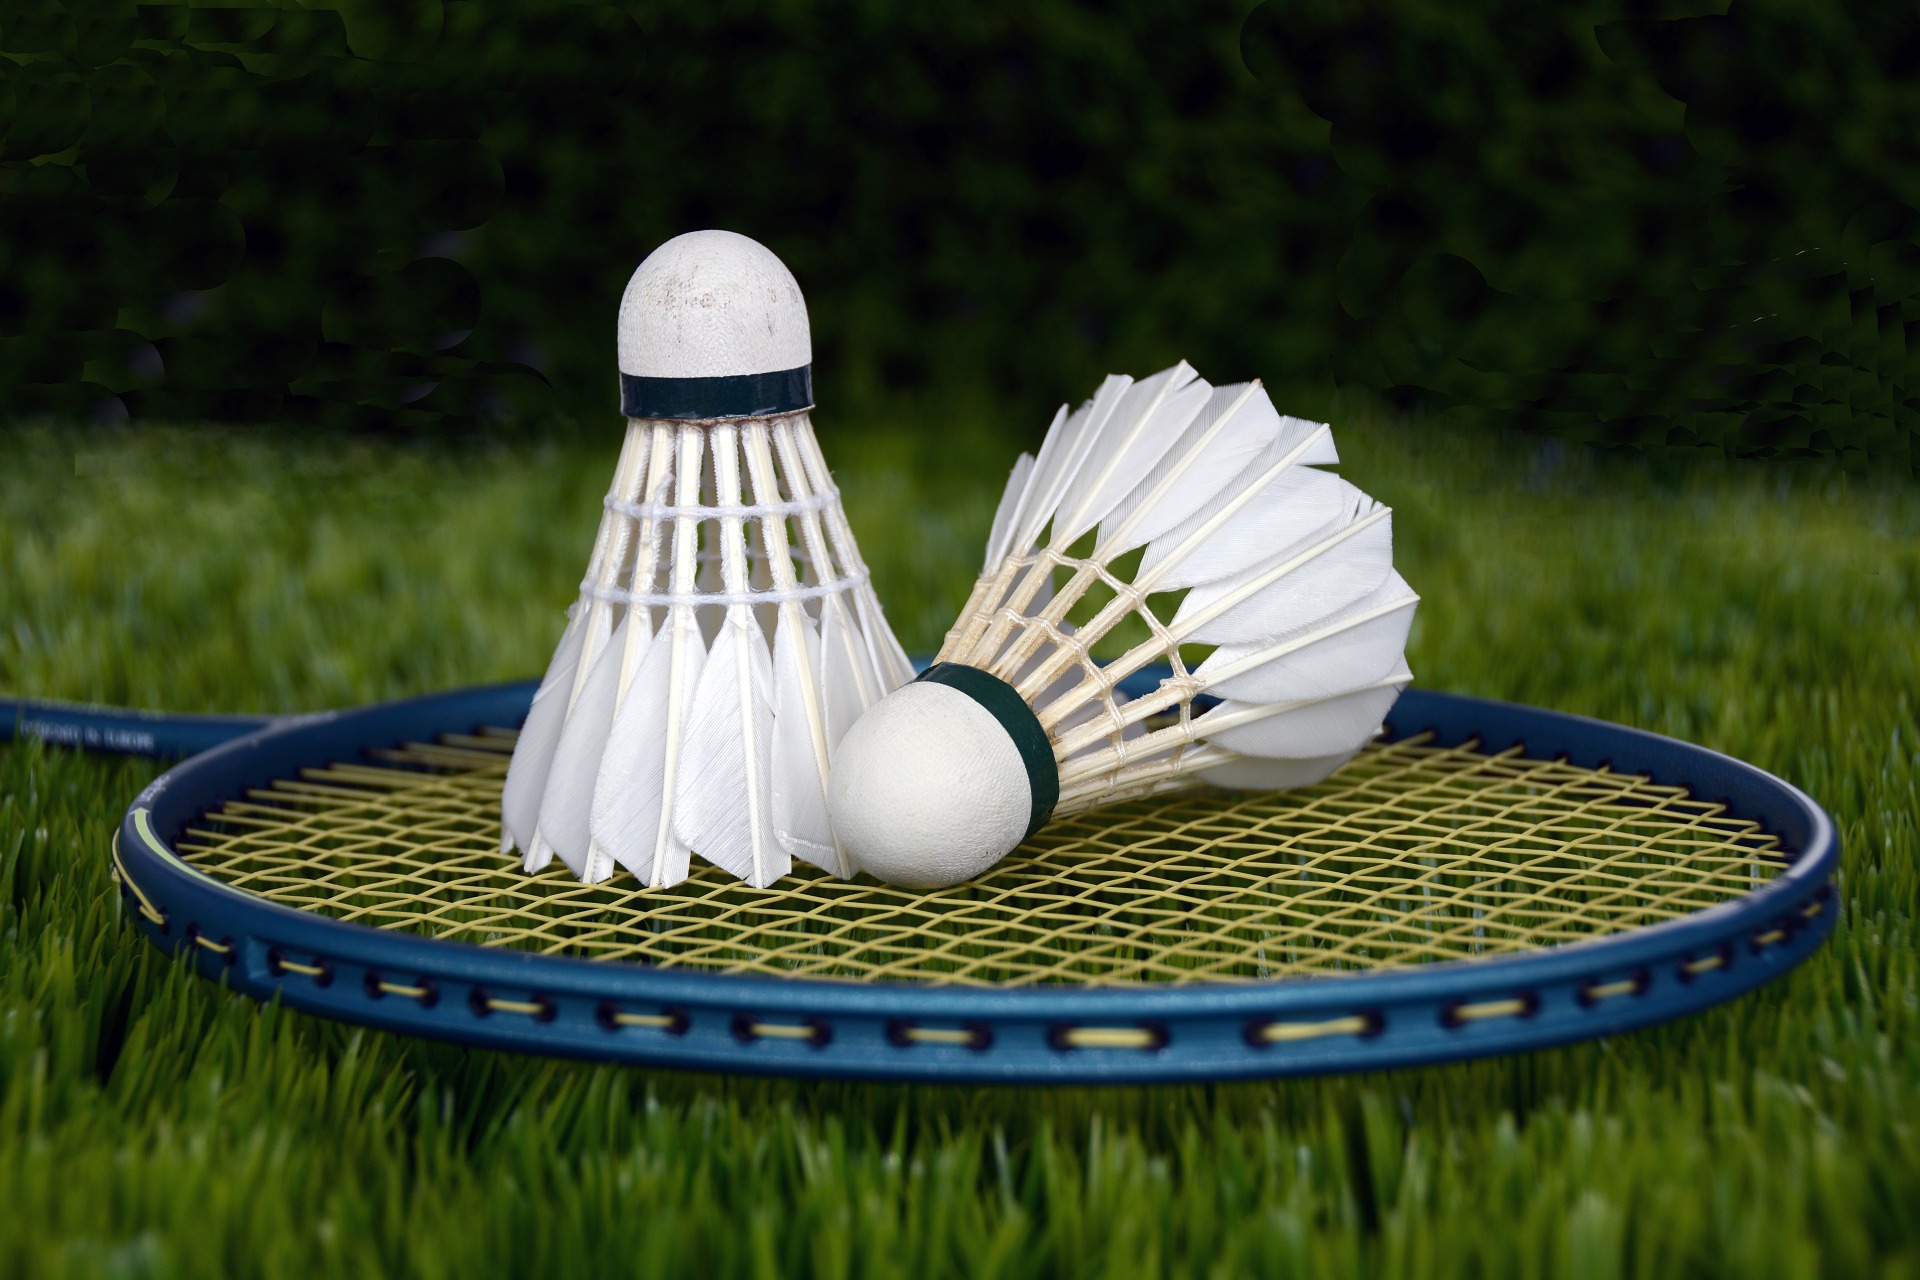 Blue Badminton Racket